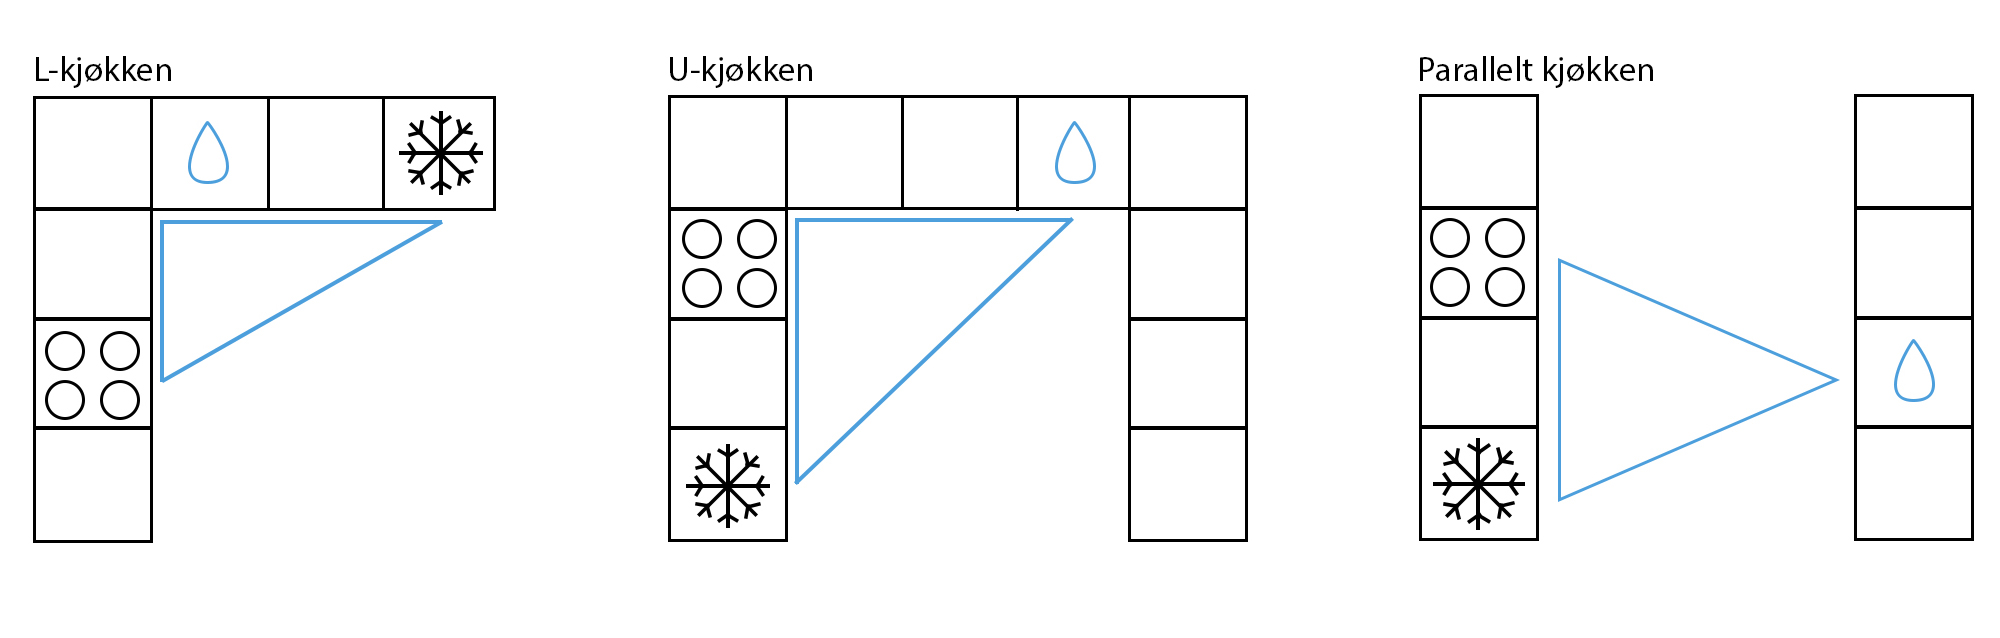 Illustrasjon av eksempler på kjøkkentrekanten i L-kjøkken, U-kjøkken og parallelt kjøkken